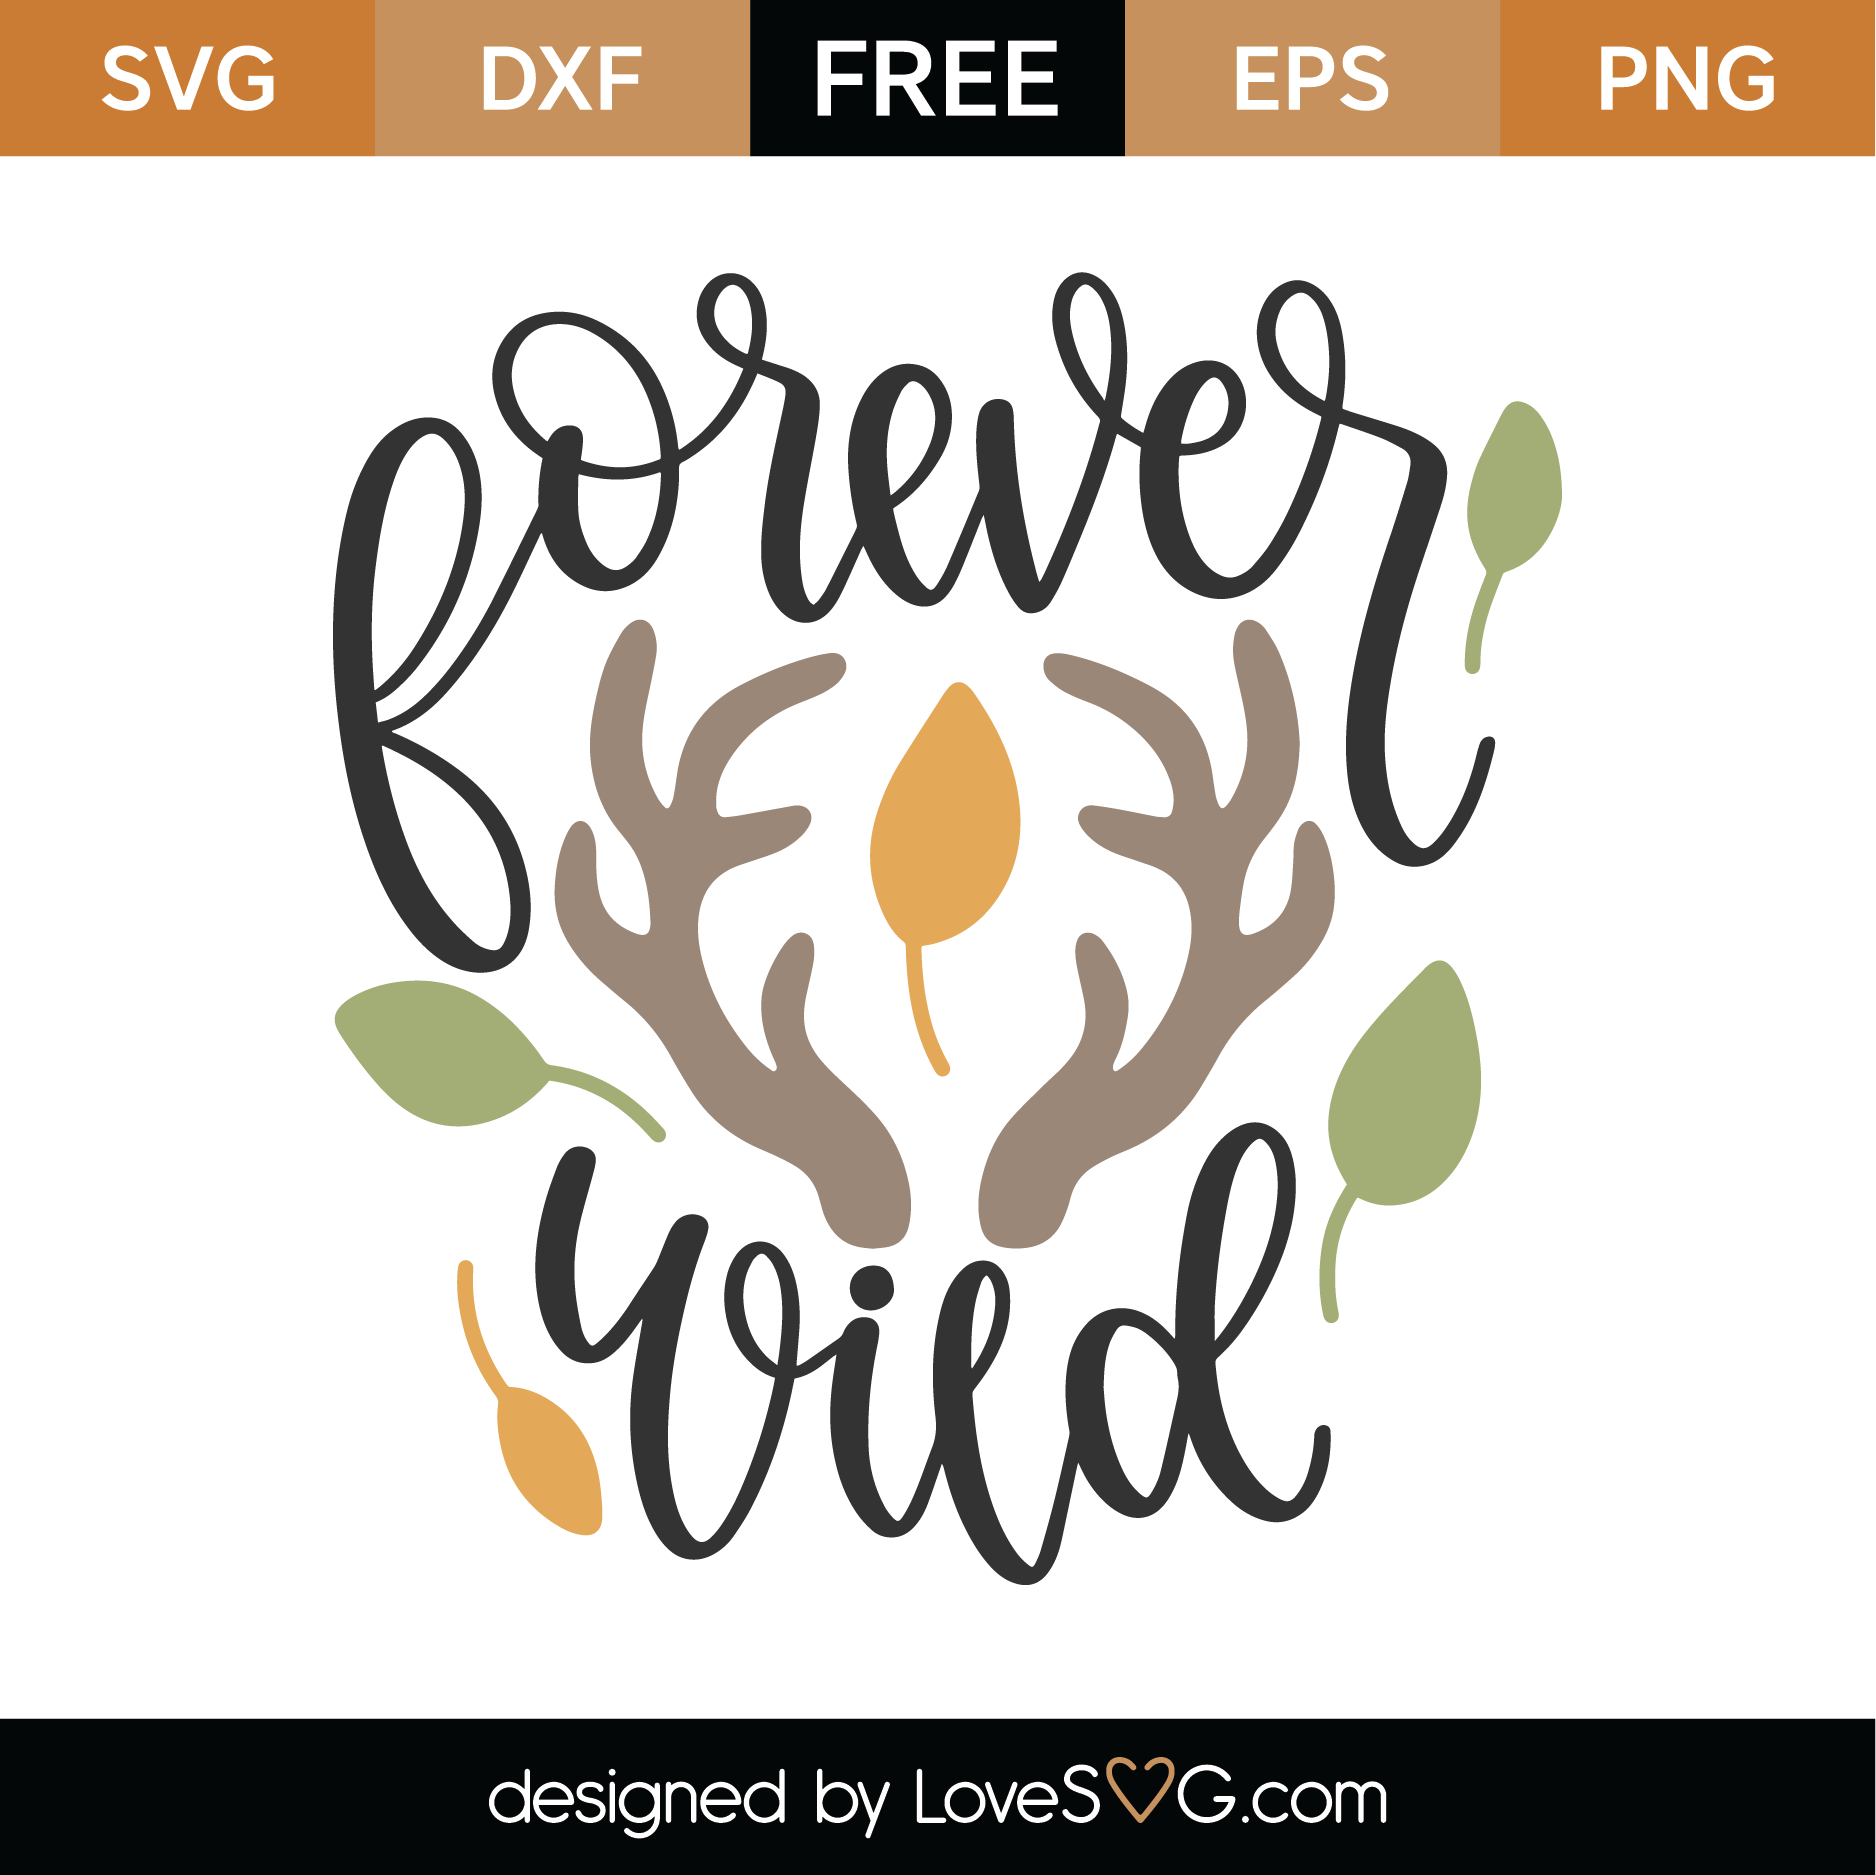 Download Free Forever Wild SVG Cut File | Lovesvg.com